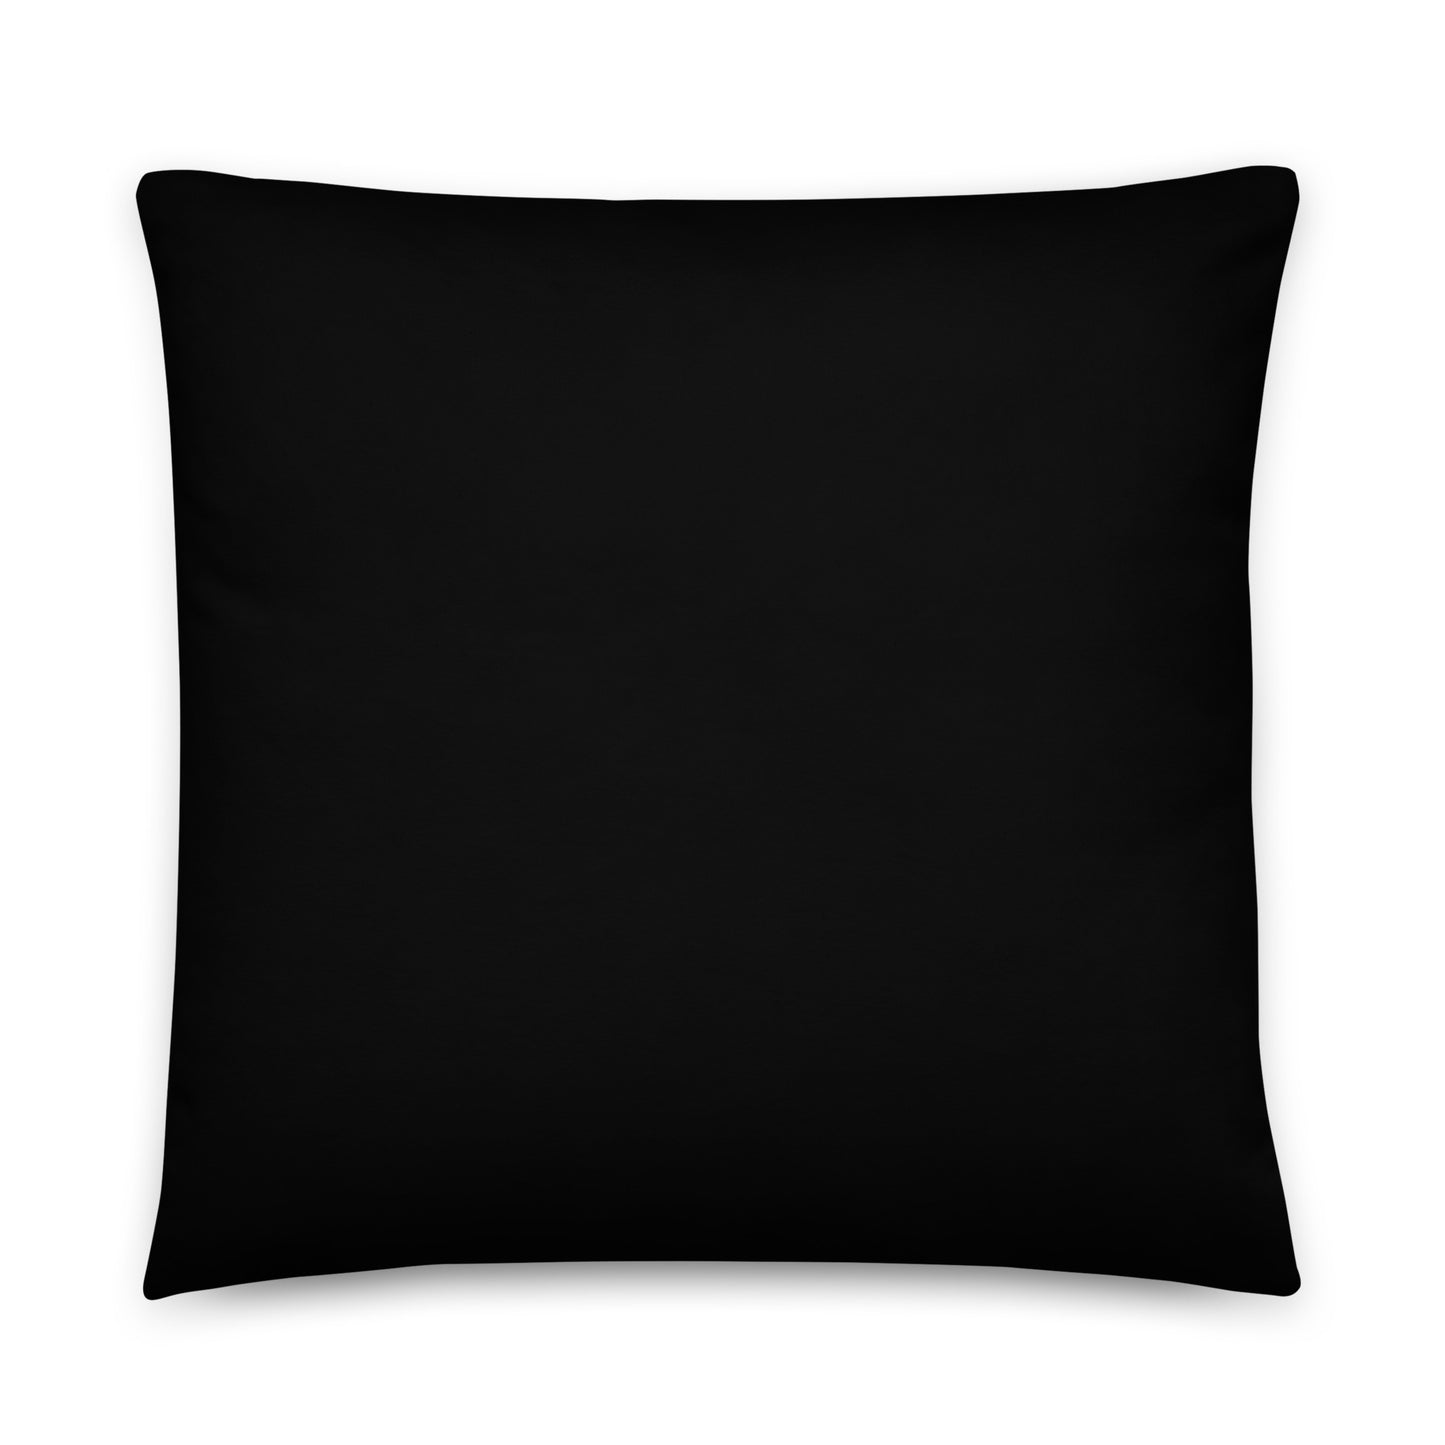 Pearson Georgia Basic Pillow